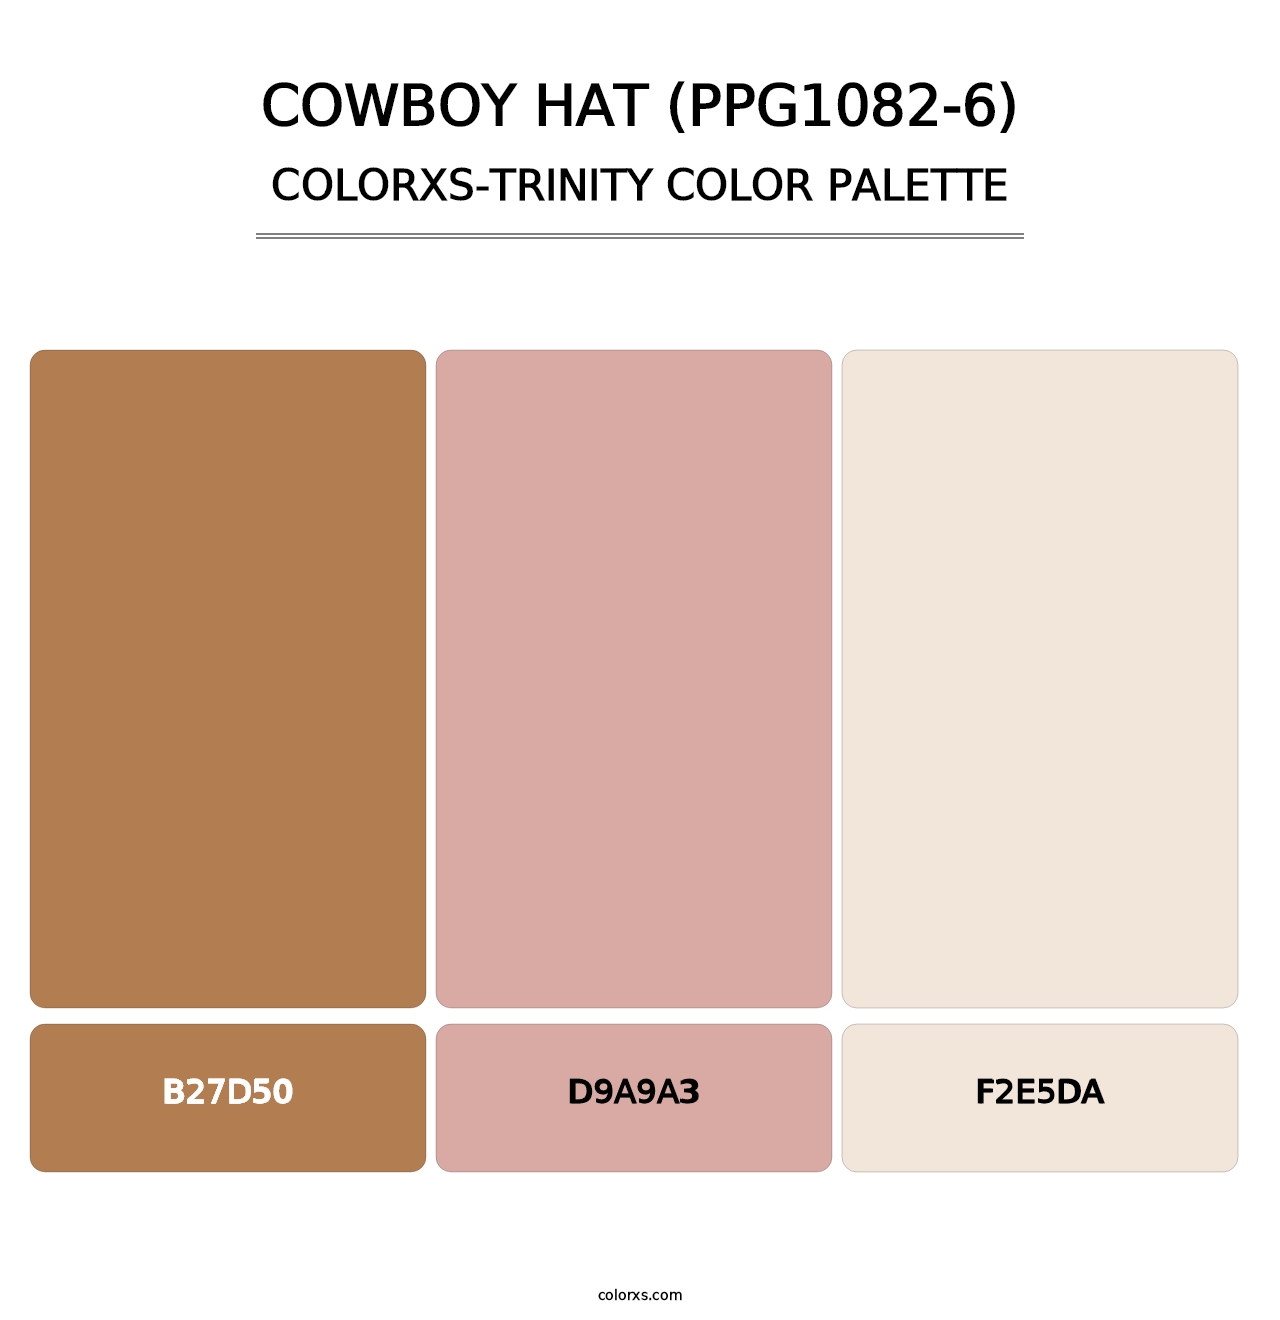 Cowboy Hat (PPG1082-6) - Colorxs Trinity Palette